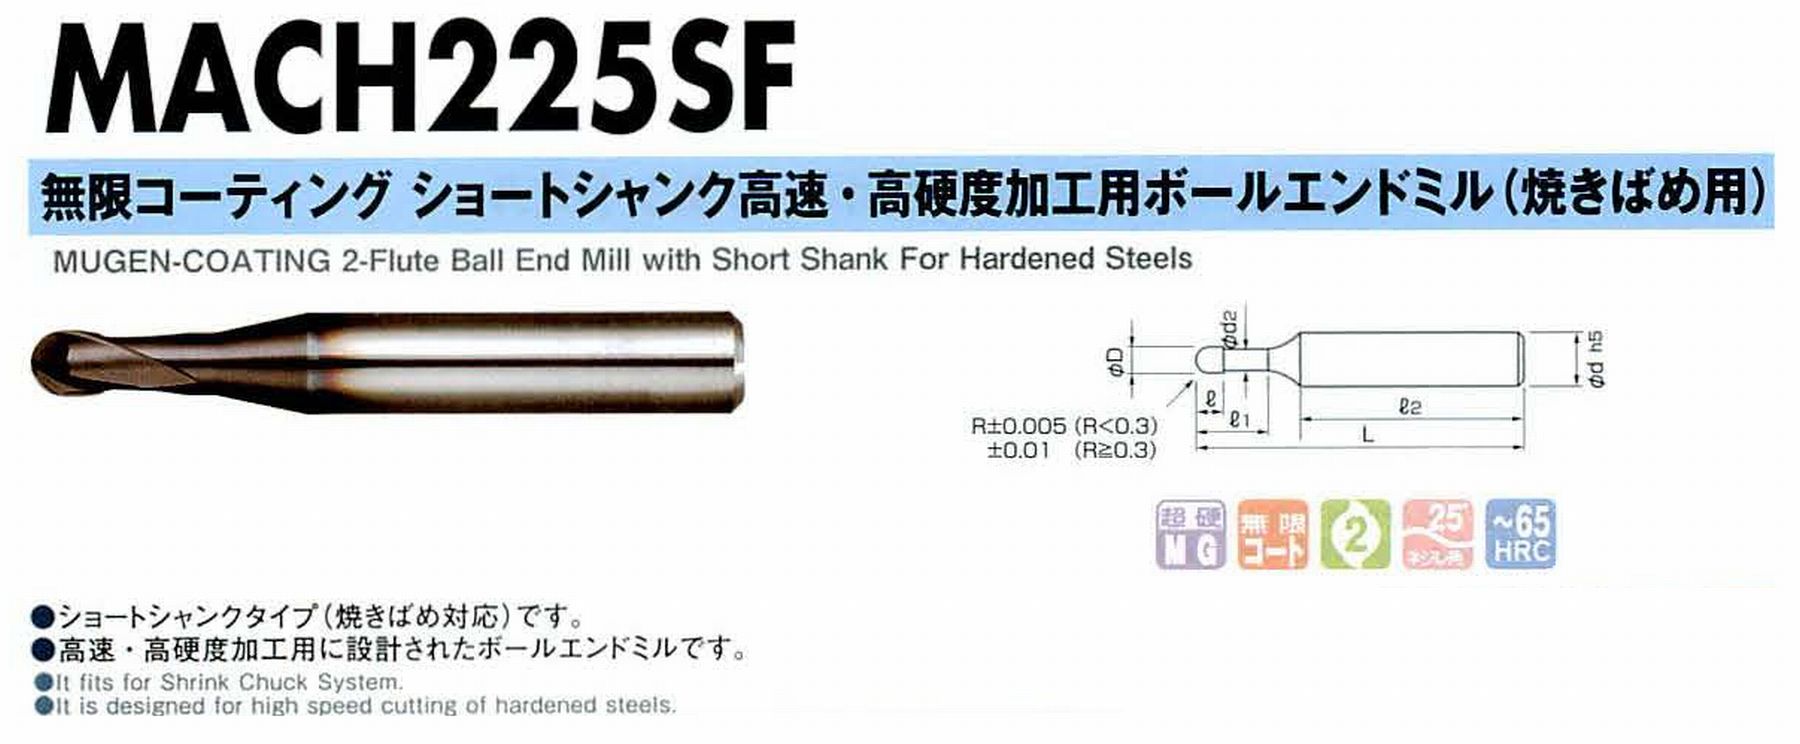 NS 日進工具 MACH225SF 無限コーティングショートシャンク高速・高硬度加工用ボールエンドミル(焼きばめ用) コードNO．08-00554-03011 ボール半径R0.3 有効長1.5 刃長0.6 刃径0.6 首下径0.56 シャンク径4mm シャンク長27.6 全長35